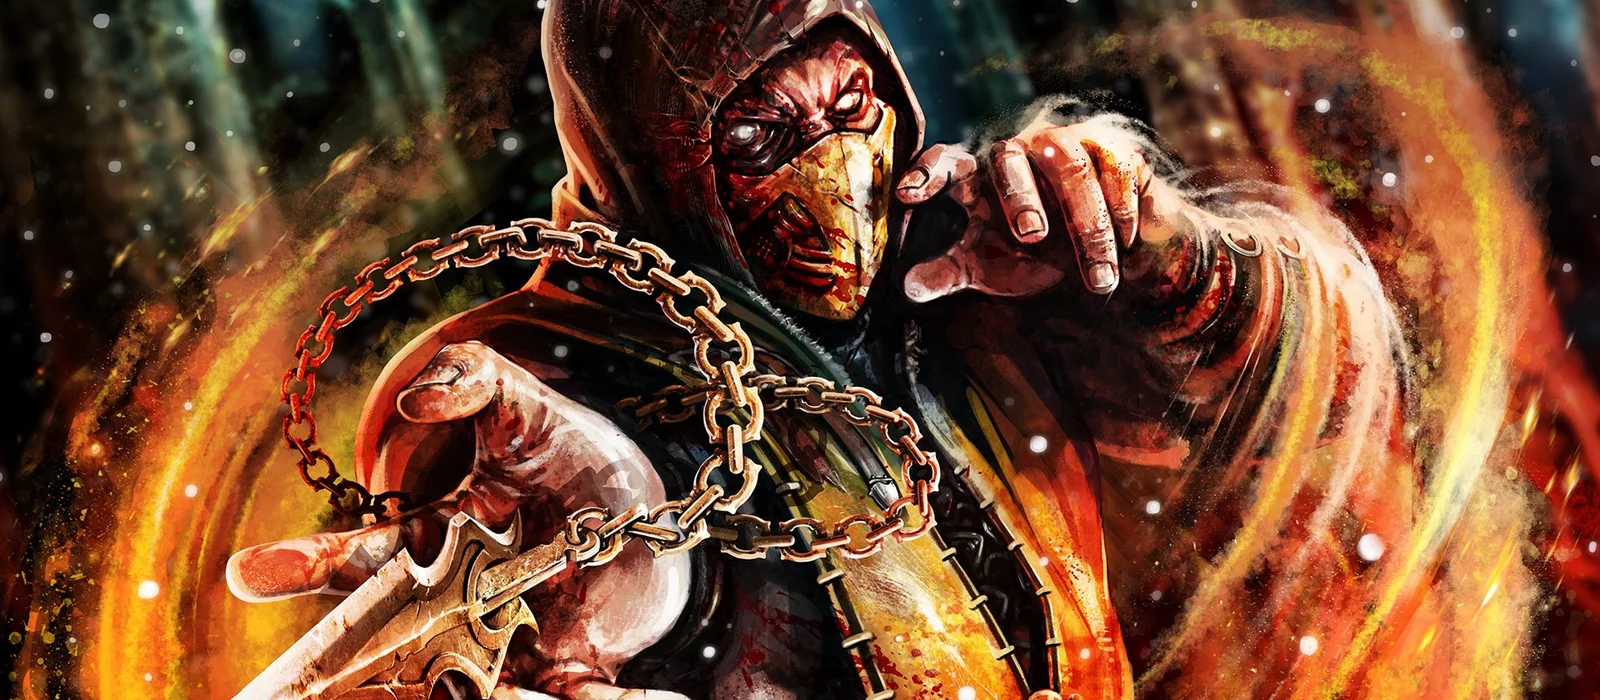 
          Фанатка Mortal Kombat круто изменила дизайн PlayStation 5. Теперь консоль выглядит так, будто ей владеет сам Скорпион
        